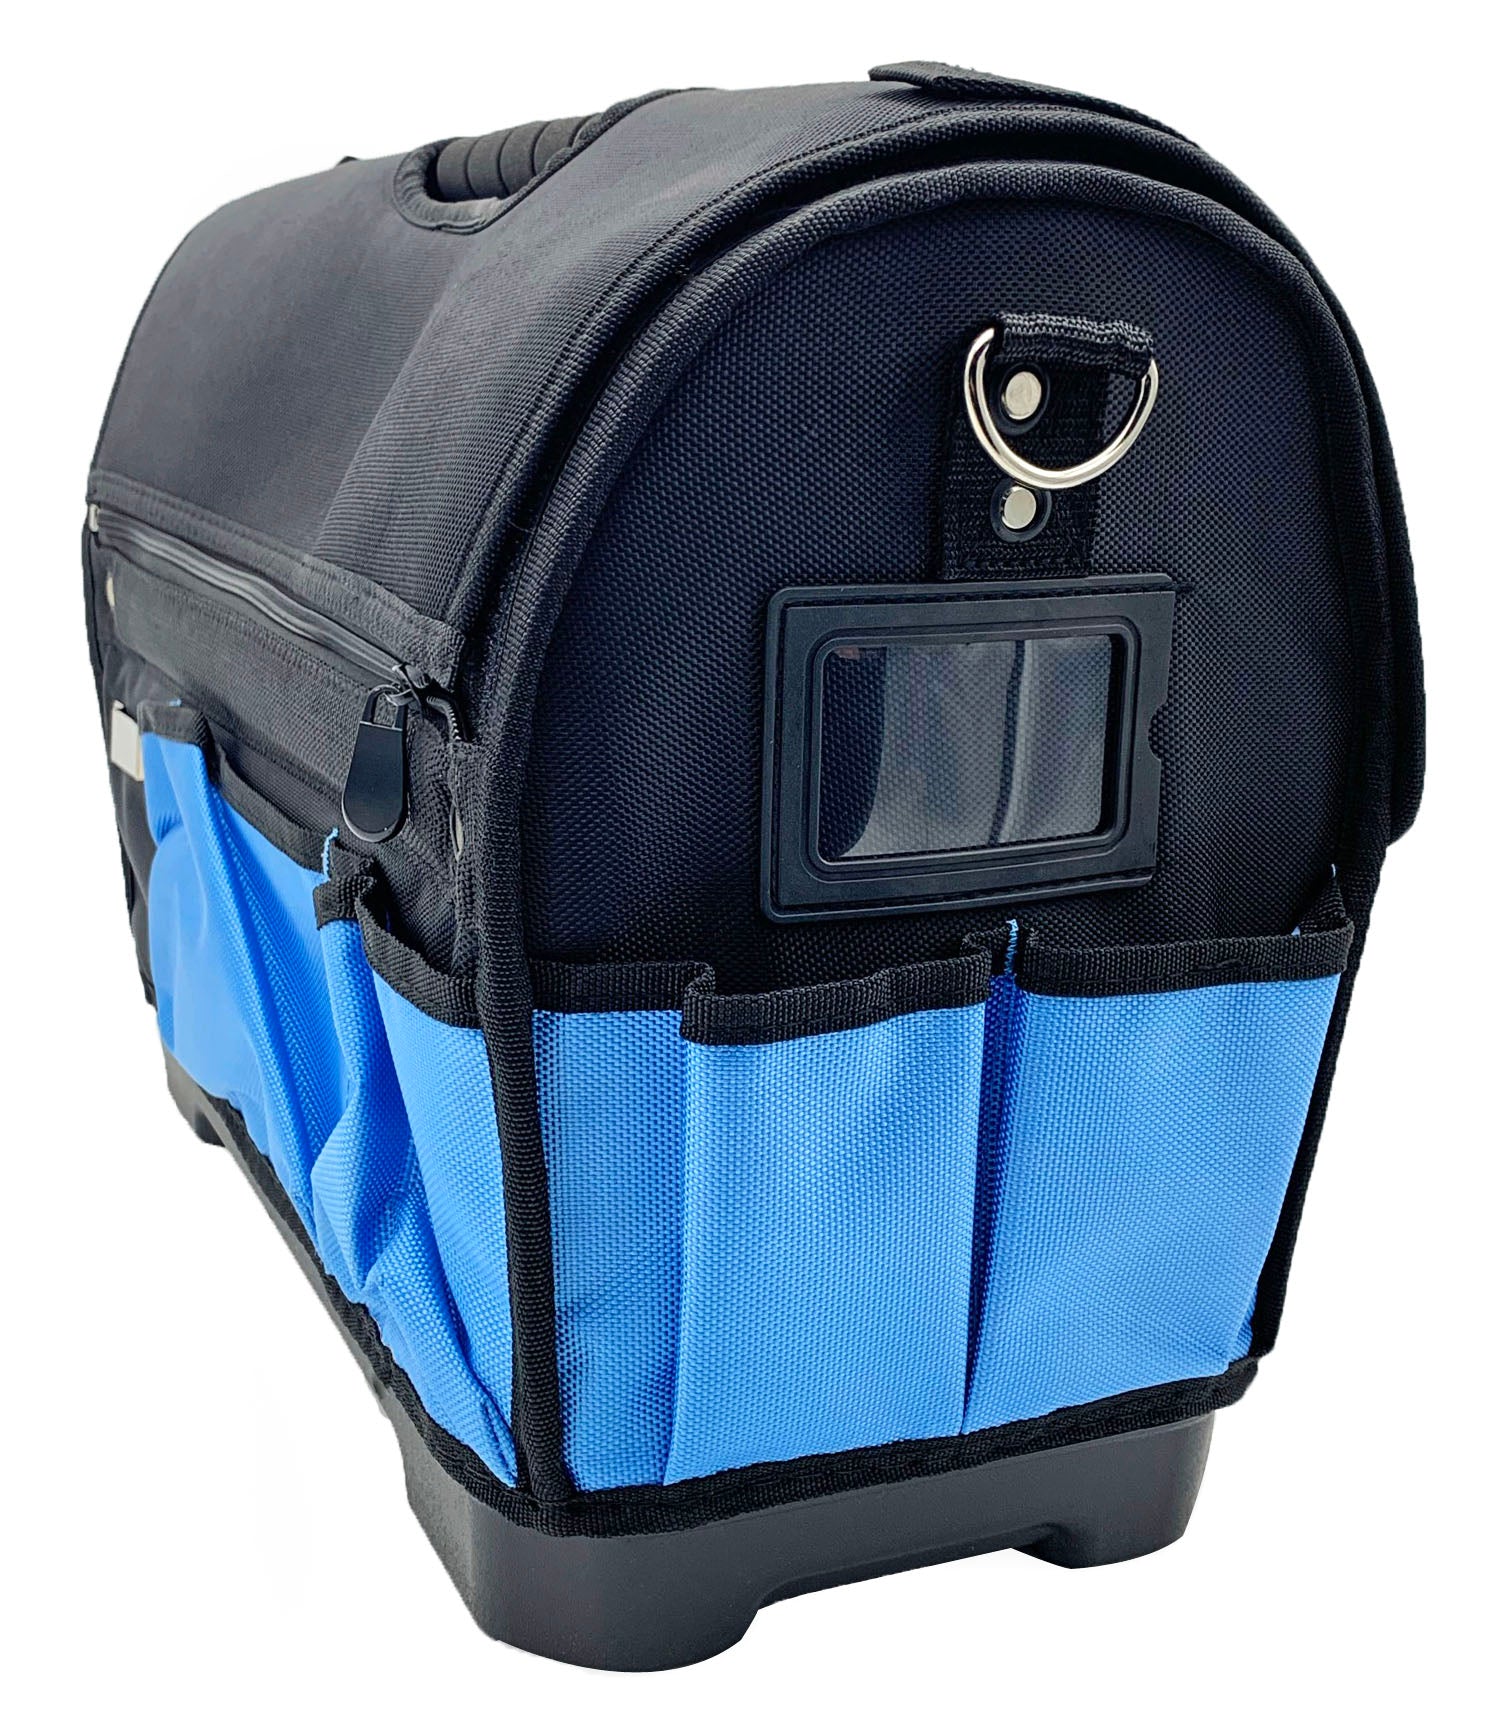 Sturdy Bag Designs XL Feedbag - Journeyman's Adventure Co.